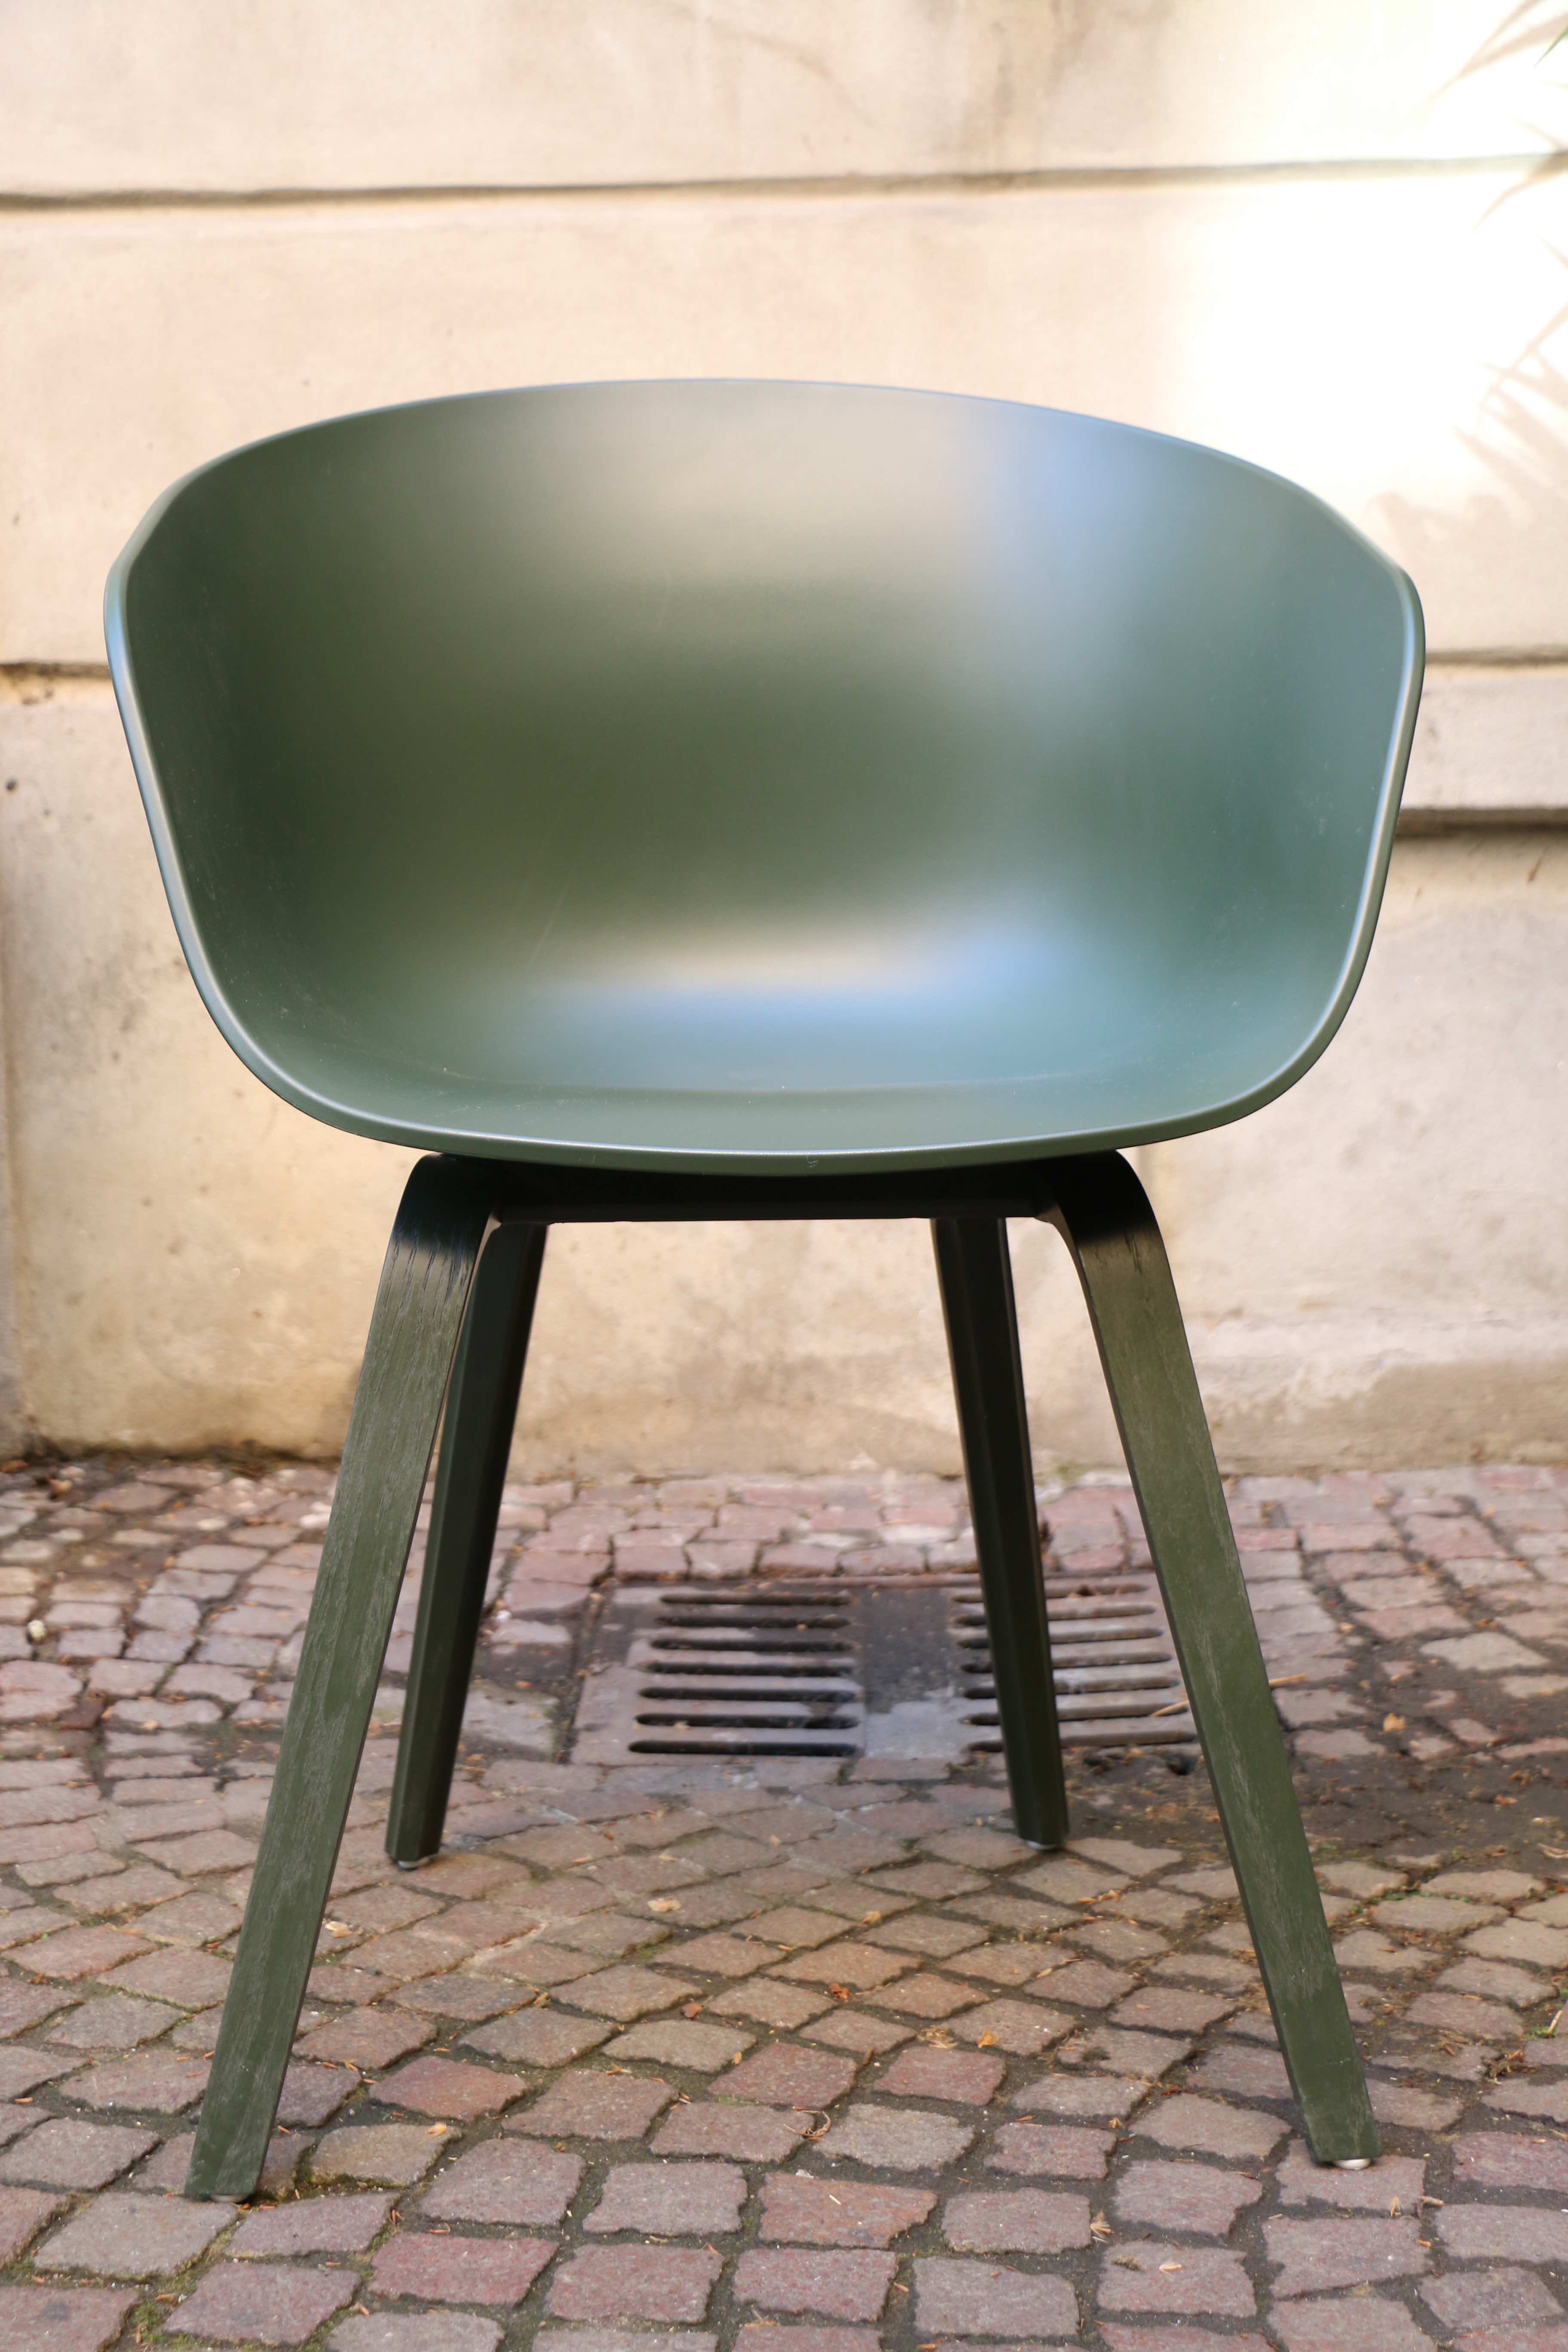 AAC 22 von HAY - About A Chair in neuen Farben by Design Bestseller